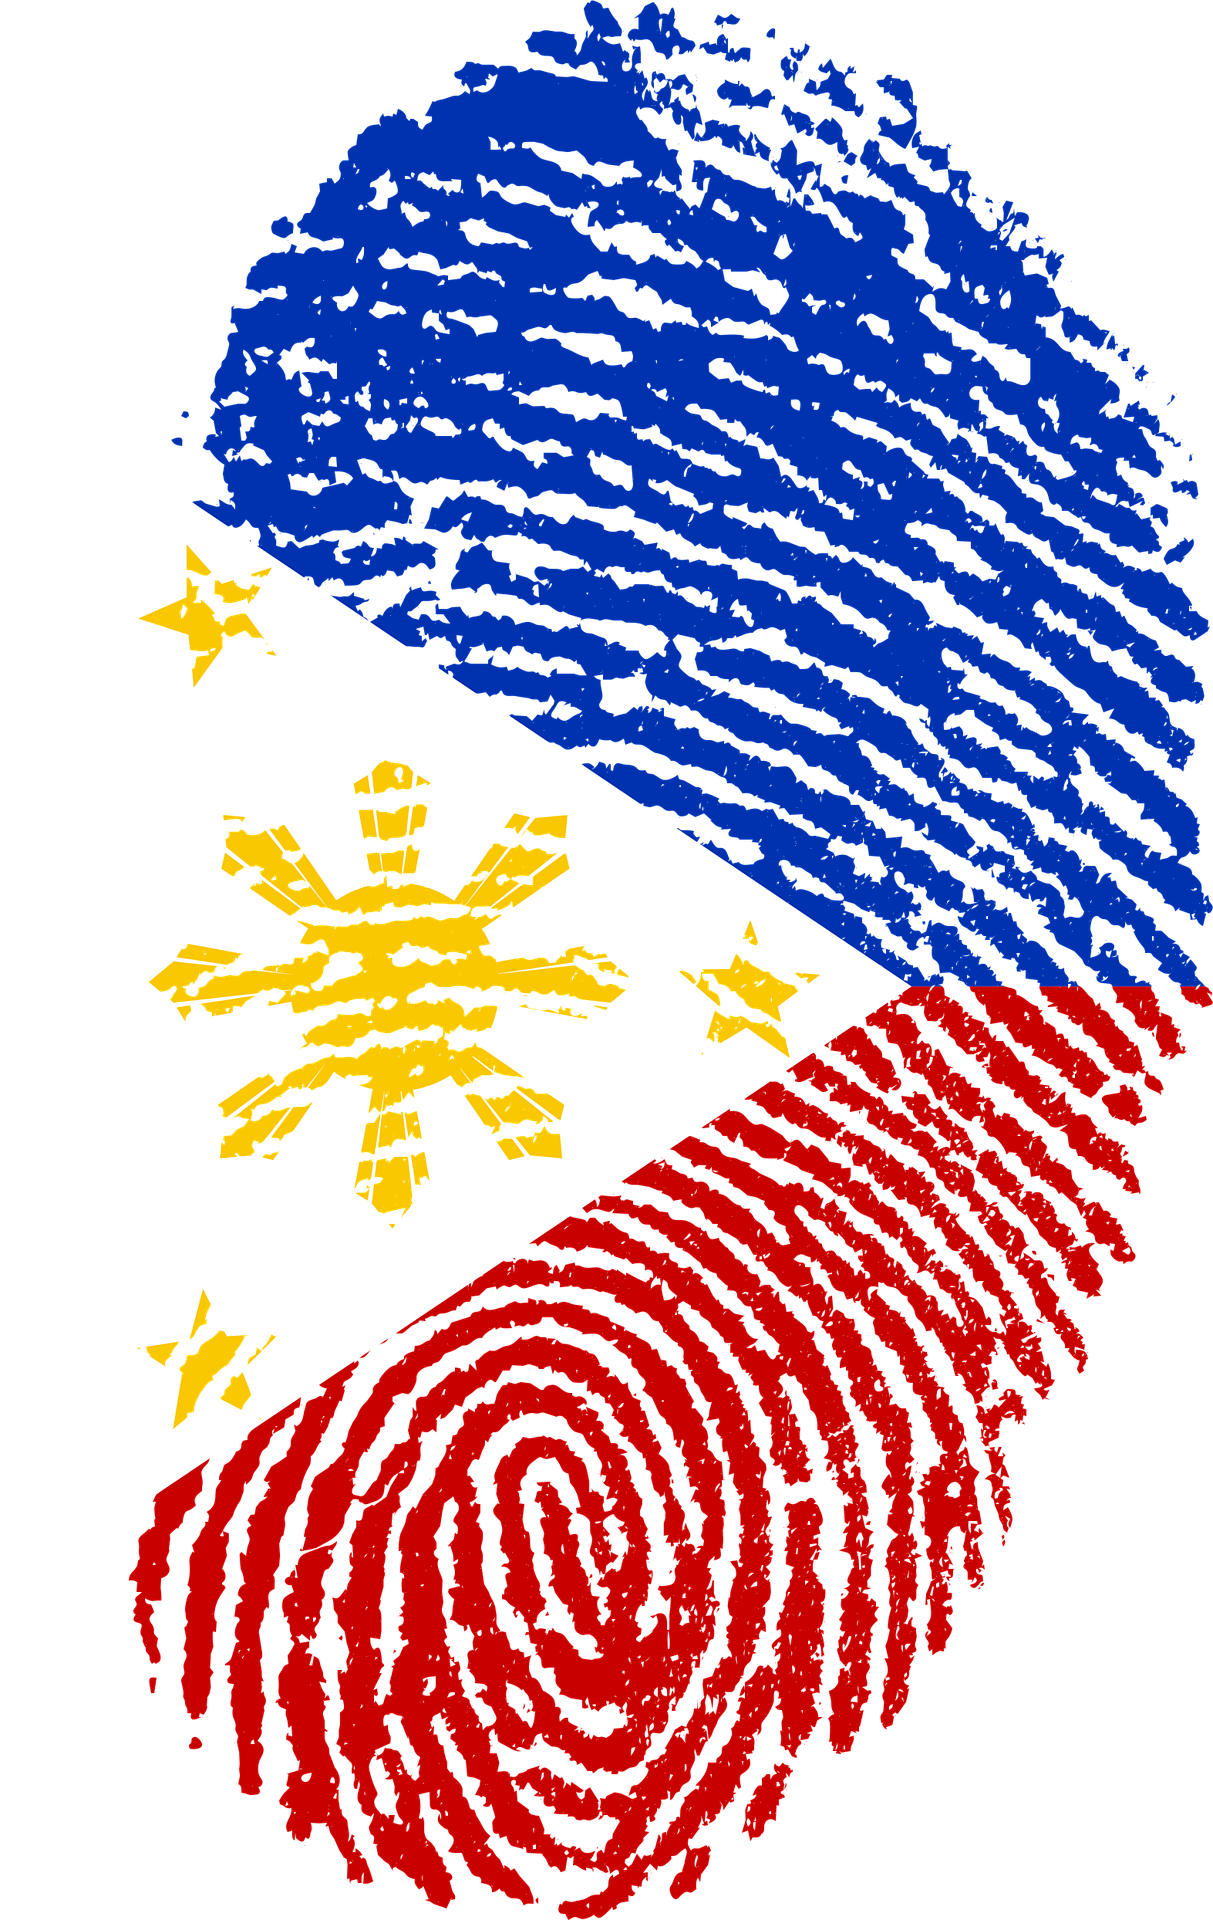 フィリピン国旗模様